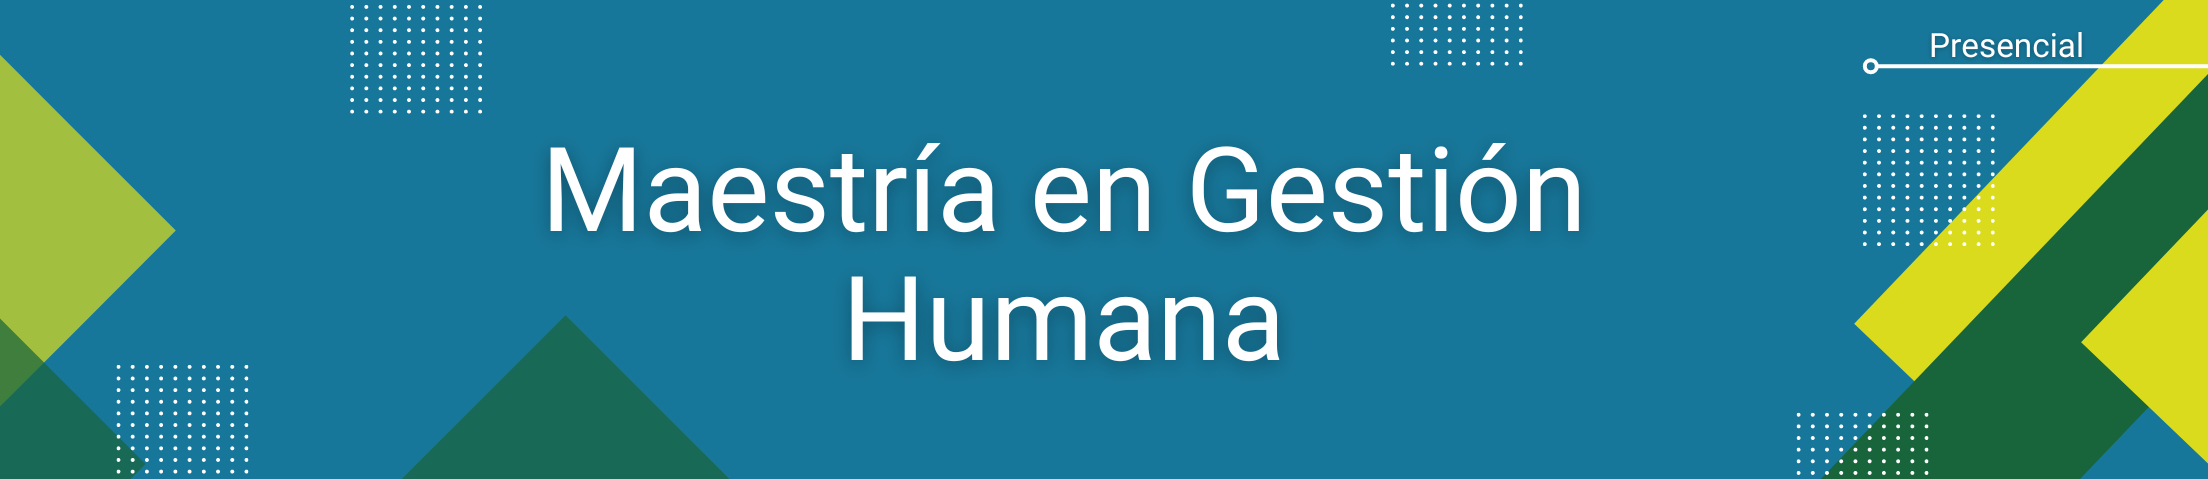 Banner inicial del programa de Maestría en Gestión Humana. Contiene la información: Modalida Presencial